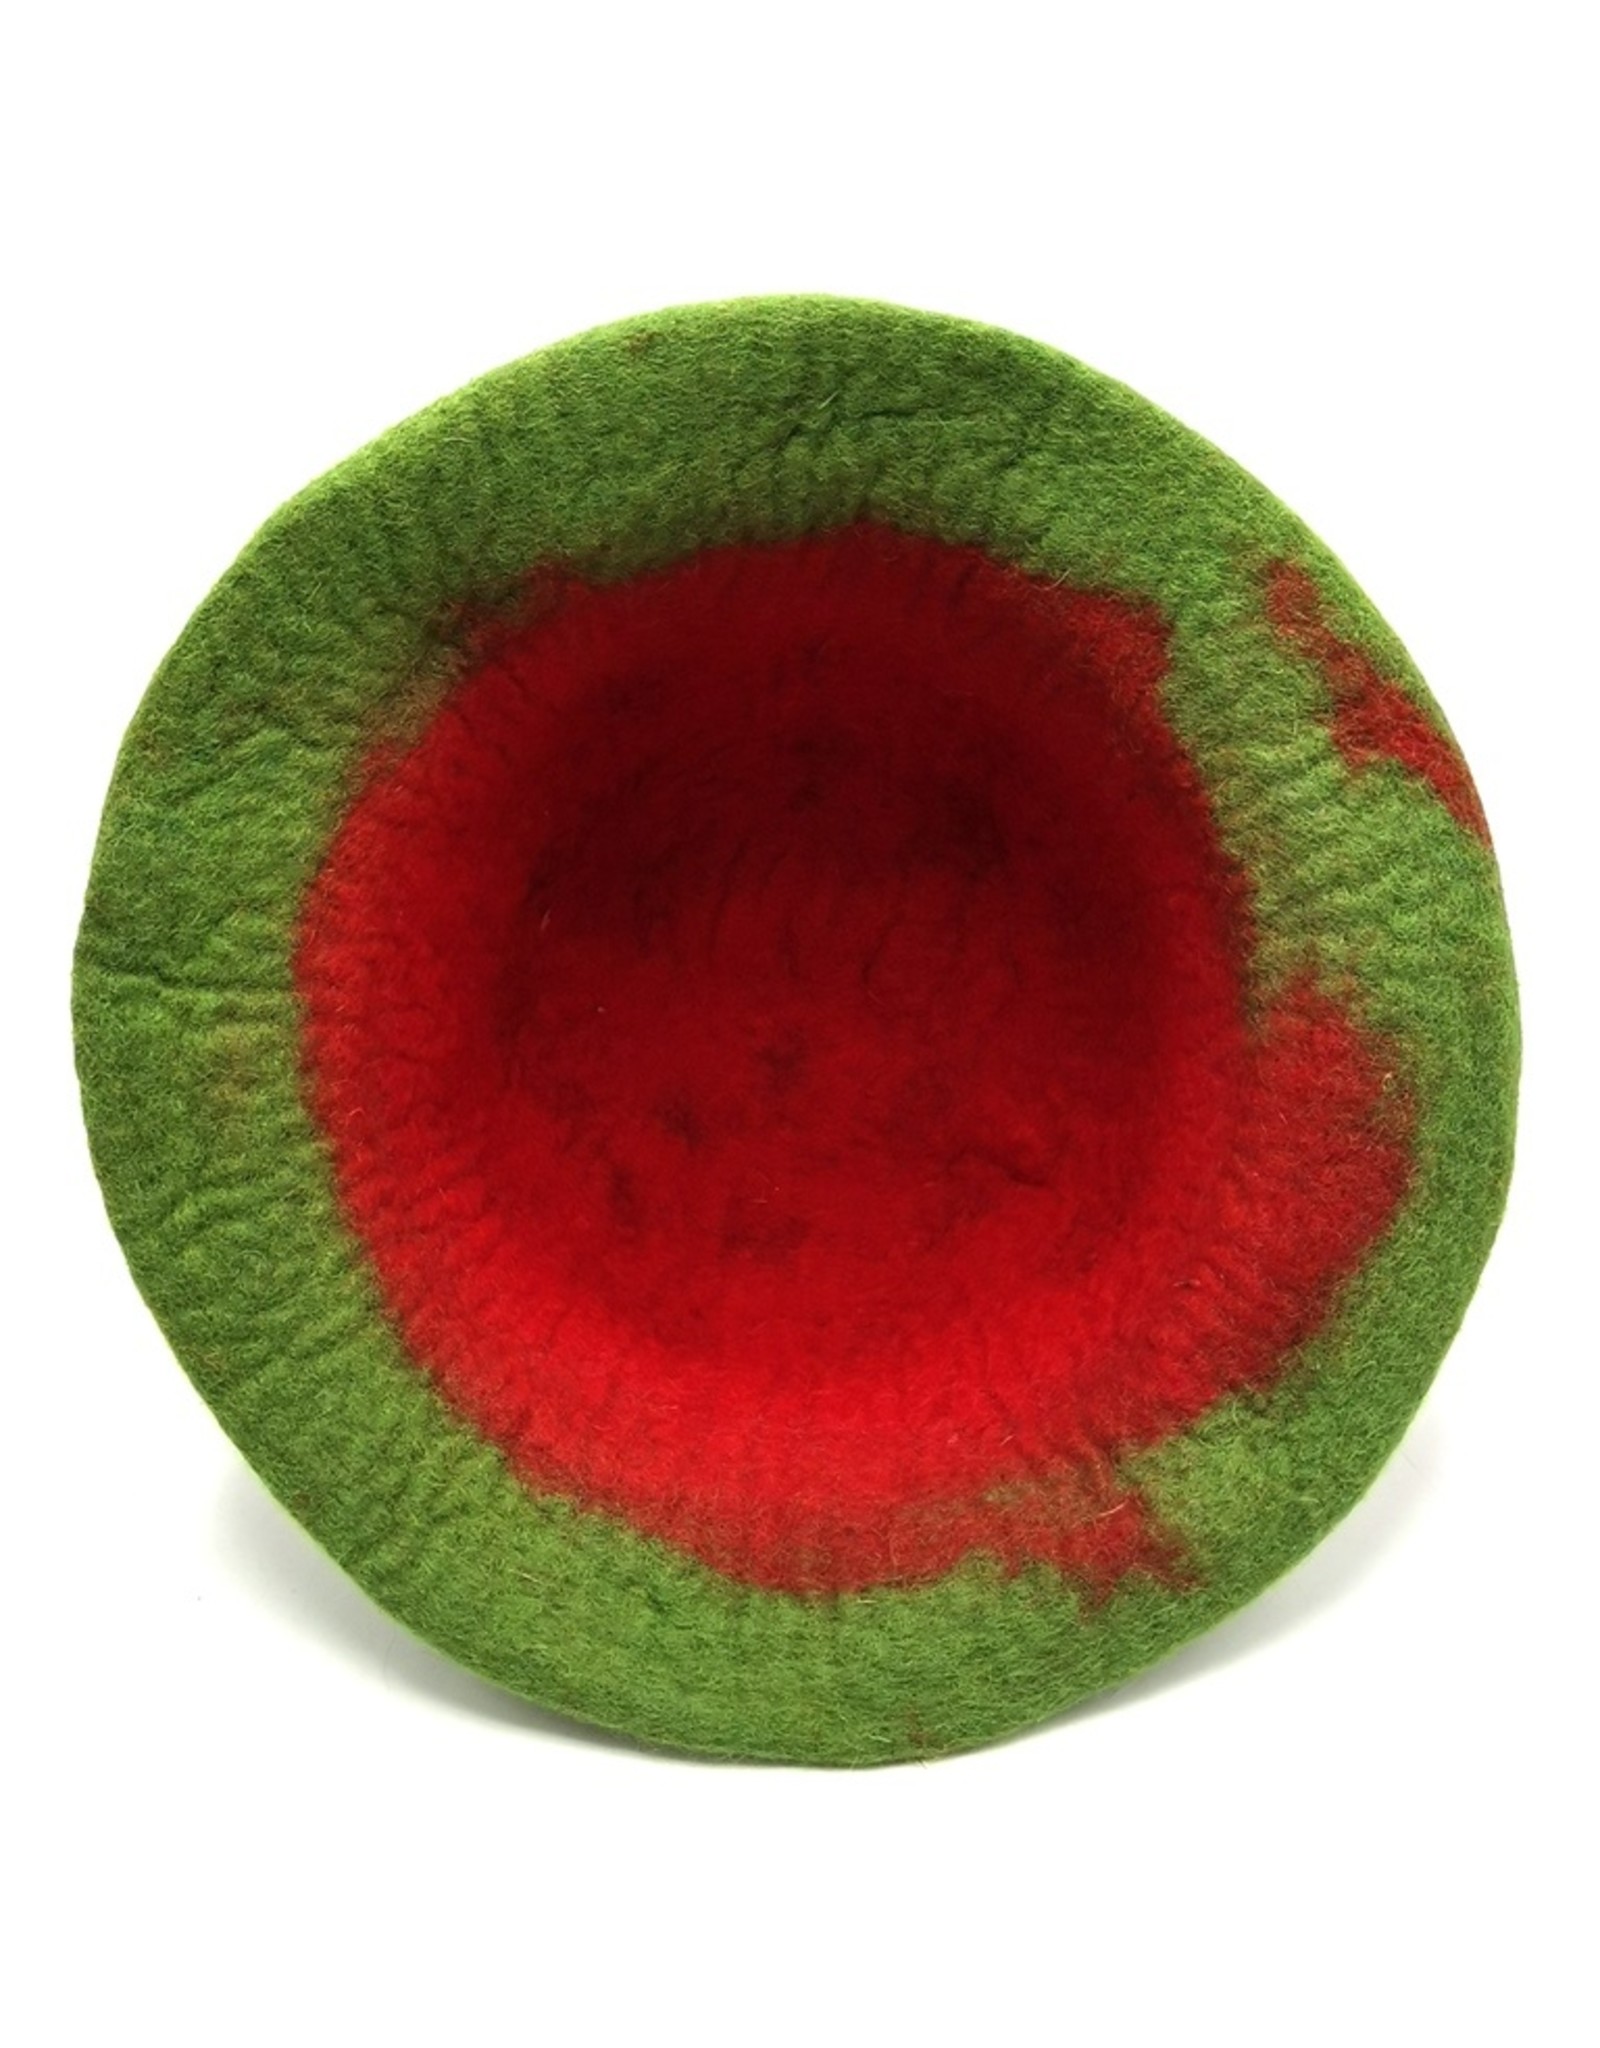 Trukado Miscellaneous - Felt hat "Watermelon"- hand felted, 100% wool